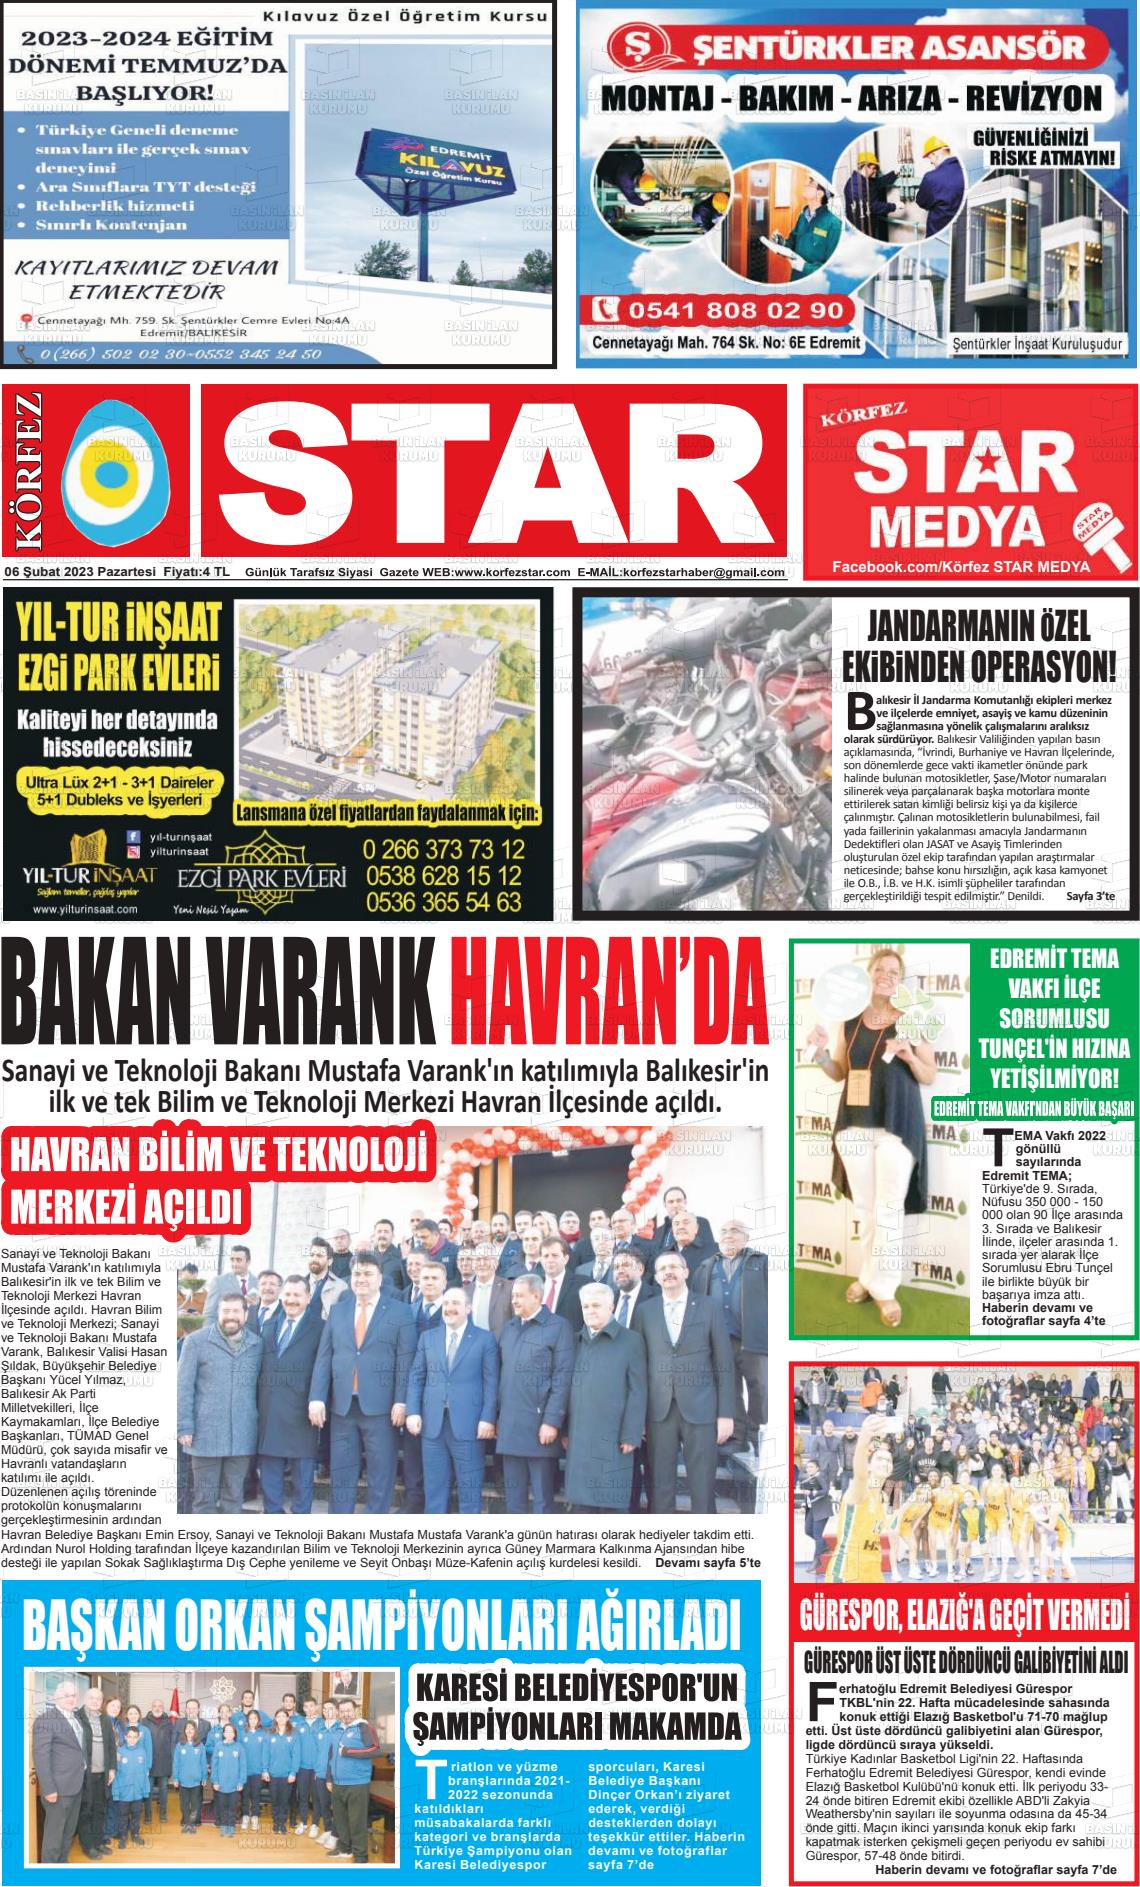 06 Şubat 2023 Körfez Star Gazete Manşeti